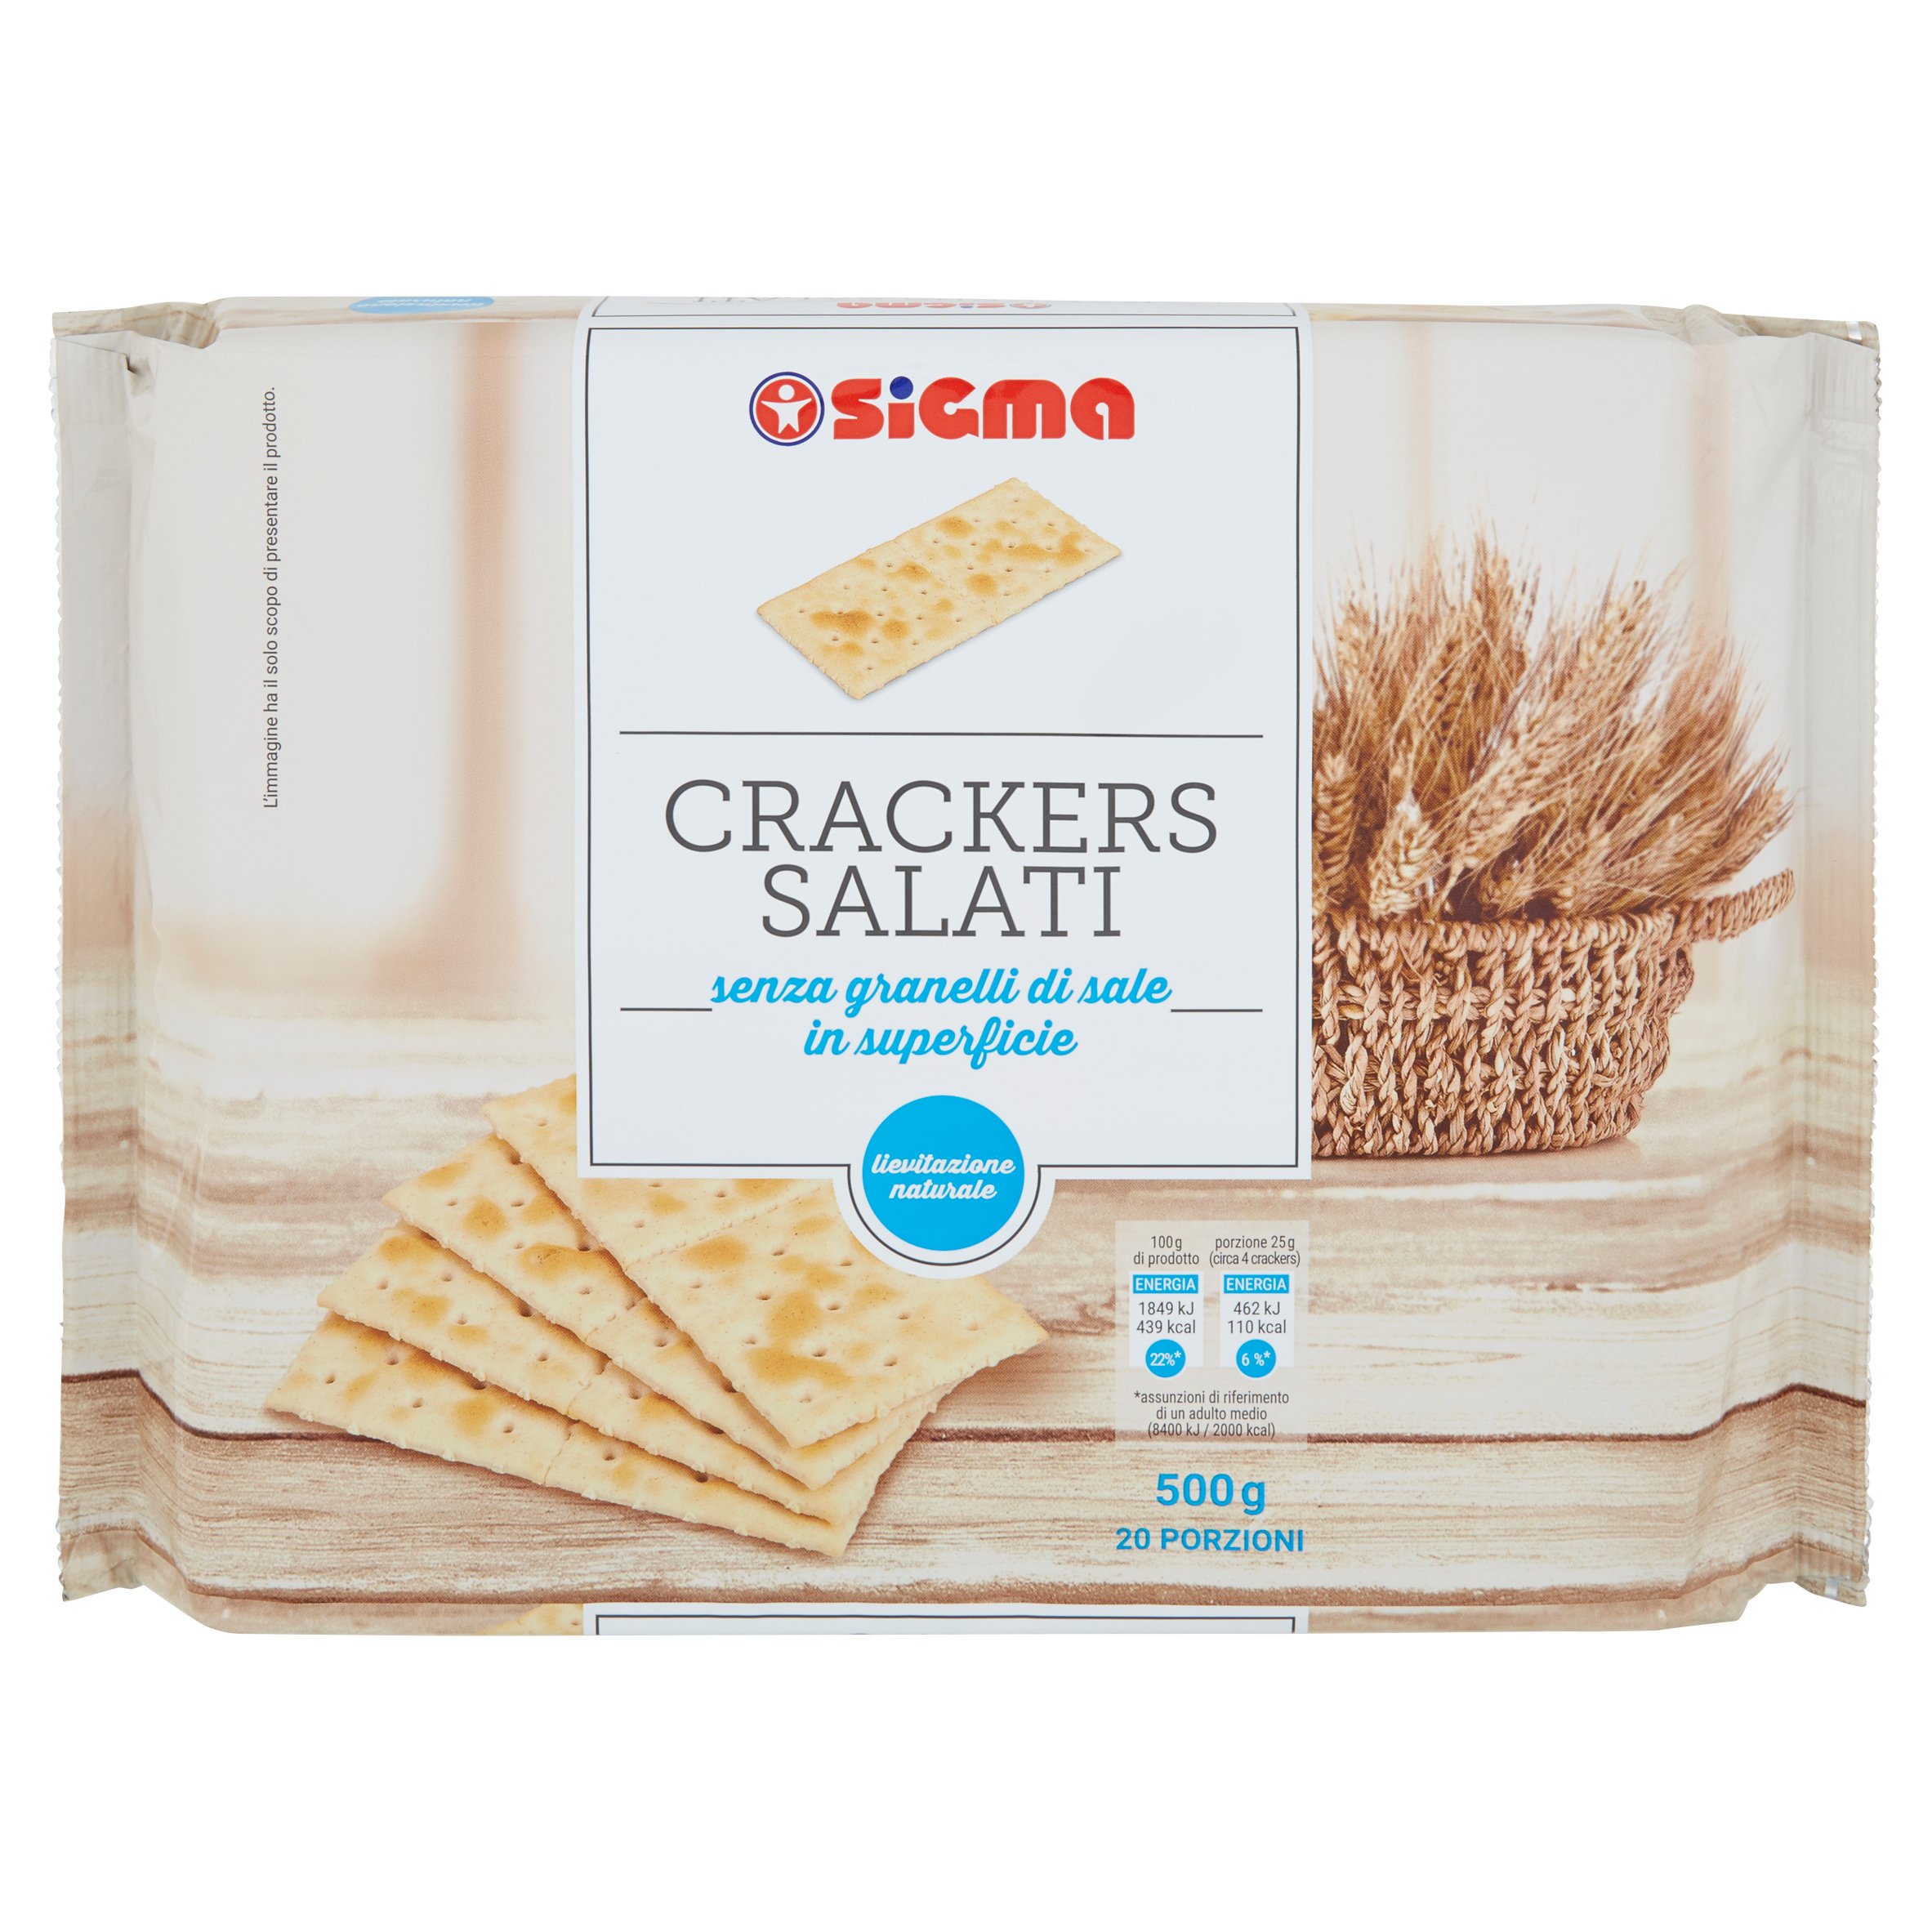 Sigma Crackers Salati senza granelli di sale in superficie 20 x 25